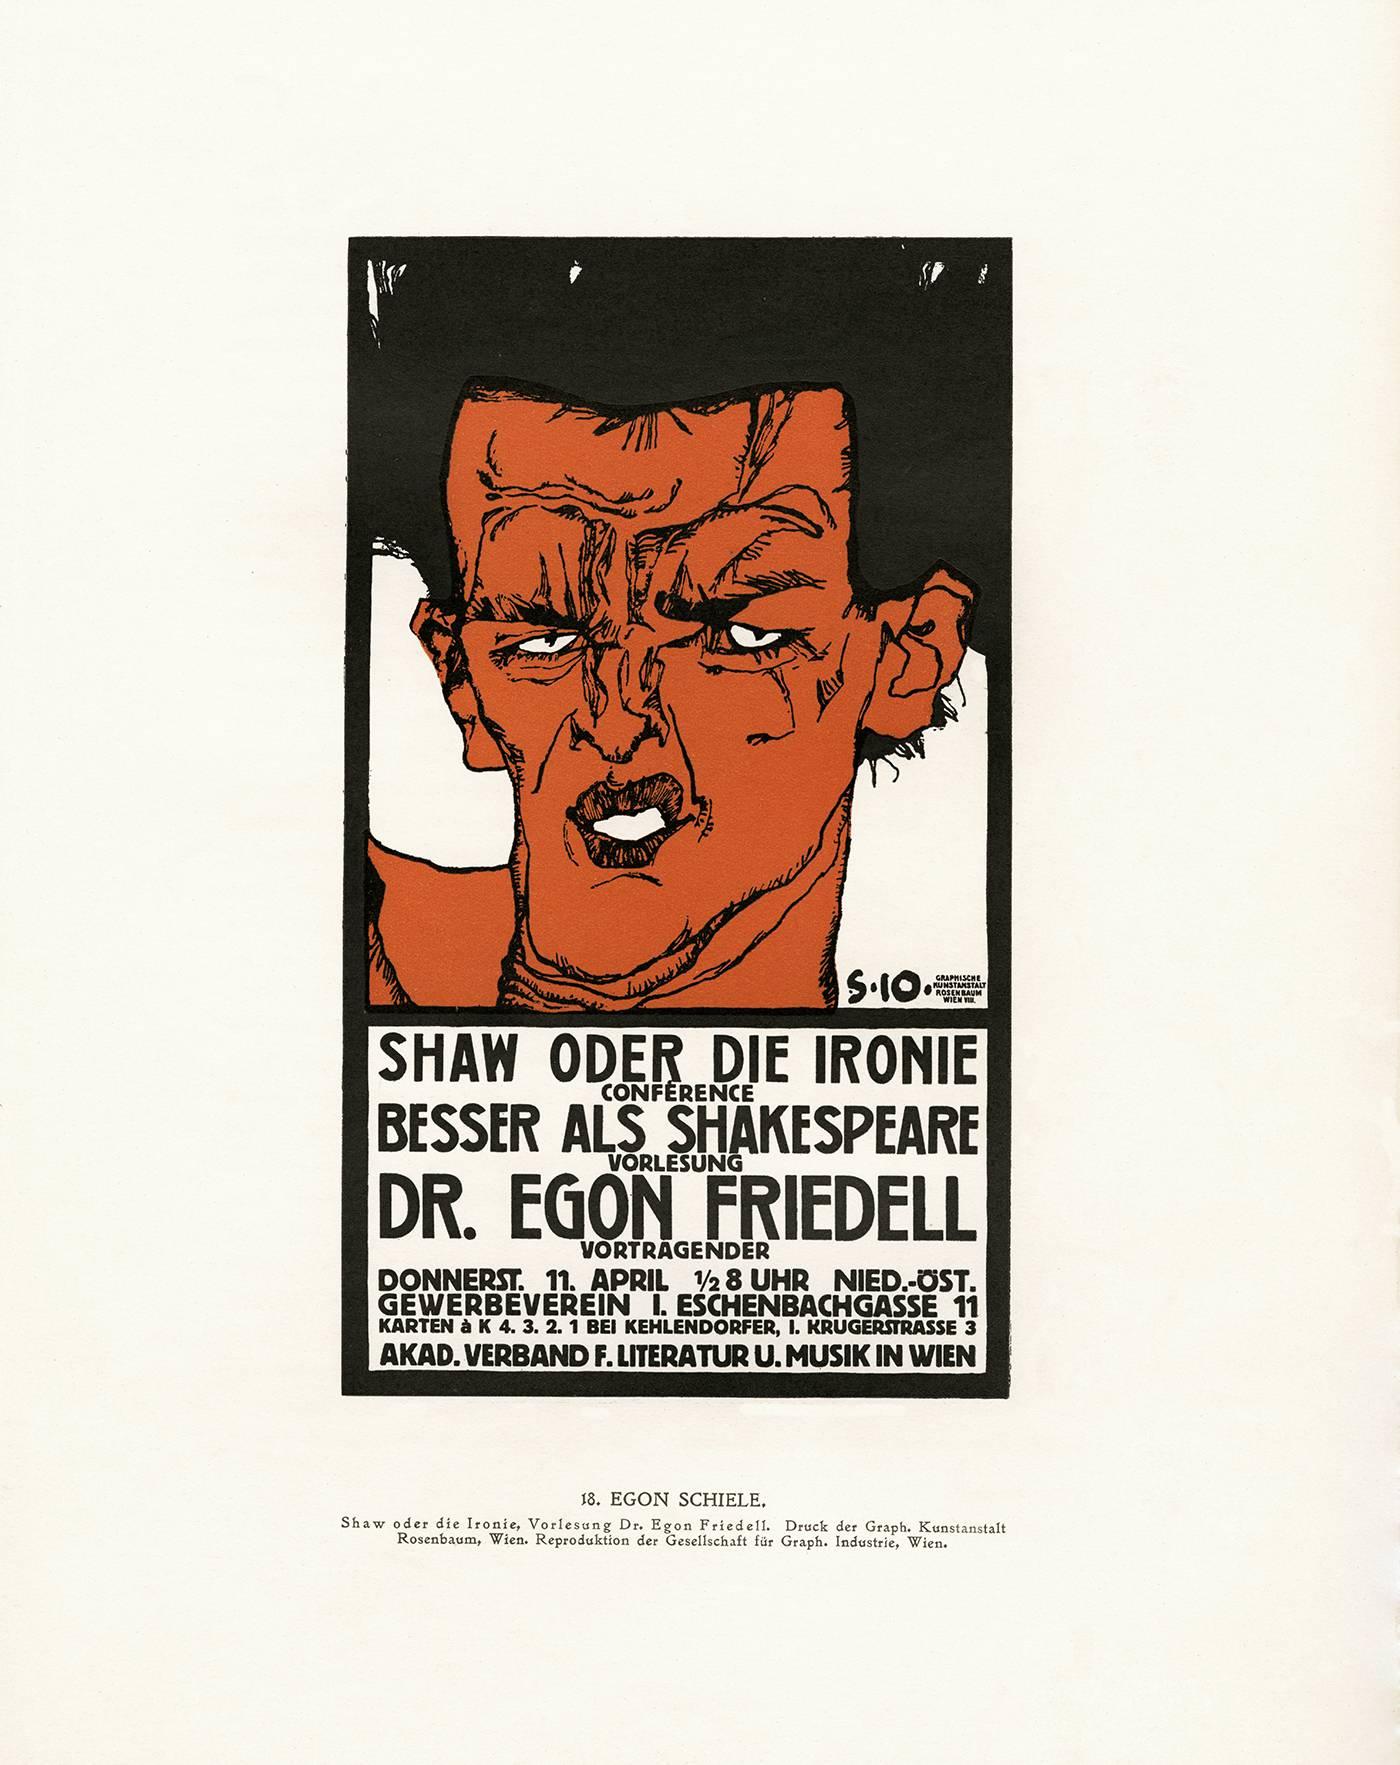 nach EGON SCHIELE (1890-1918) SHAW ODER DIE IRONIE POSTER, um 1912, (In Mascha, Nr. 18) Das Plakat von Schiele ist eine Werbung für einen Vortrag von Egon Friedell (1878-1938). Eine prominente  Mitglied der Wiener Künstlergesellschaft,